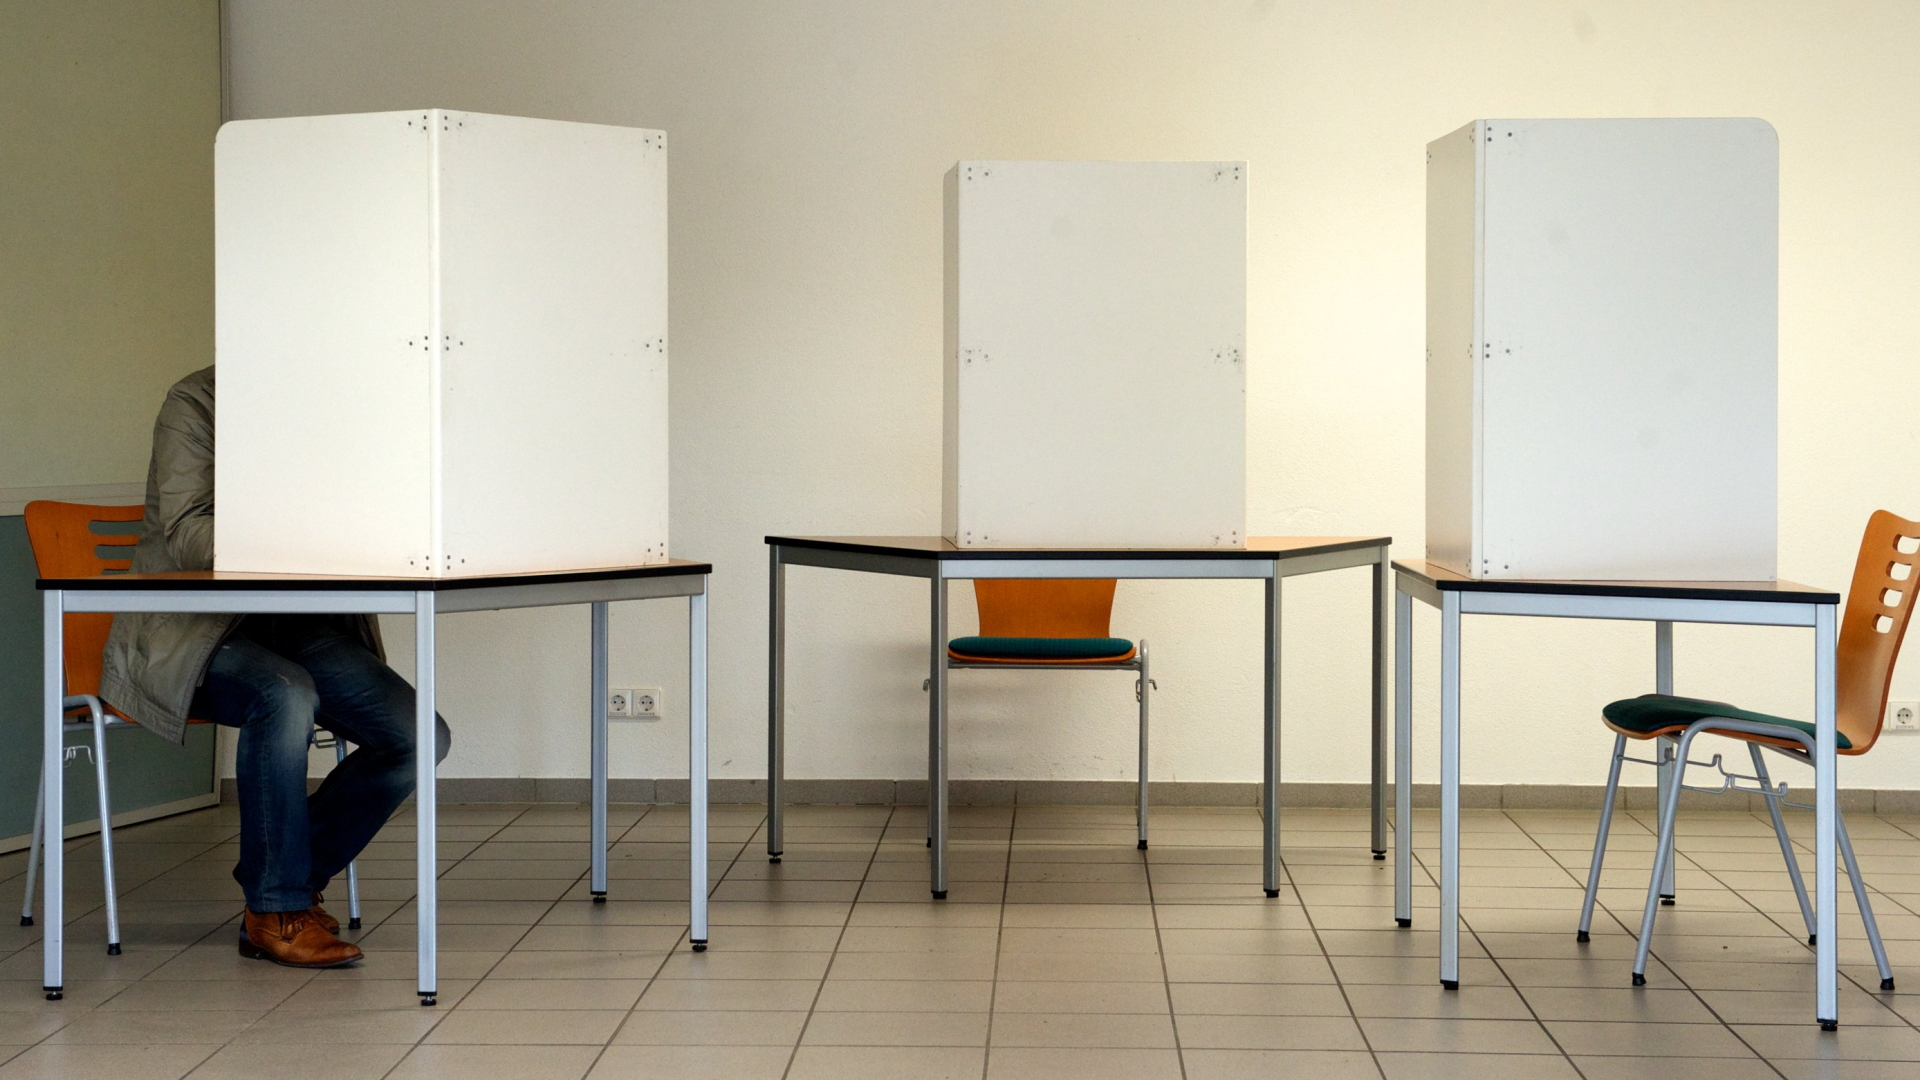 Ein einzelner Mann sitzt in einer von drei Wahlkabinen.